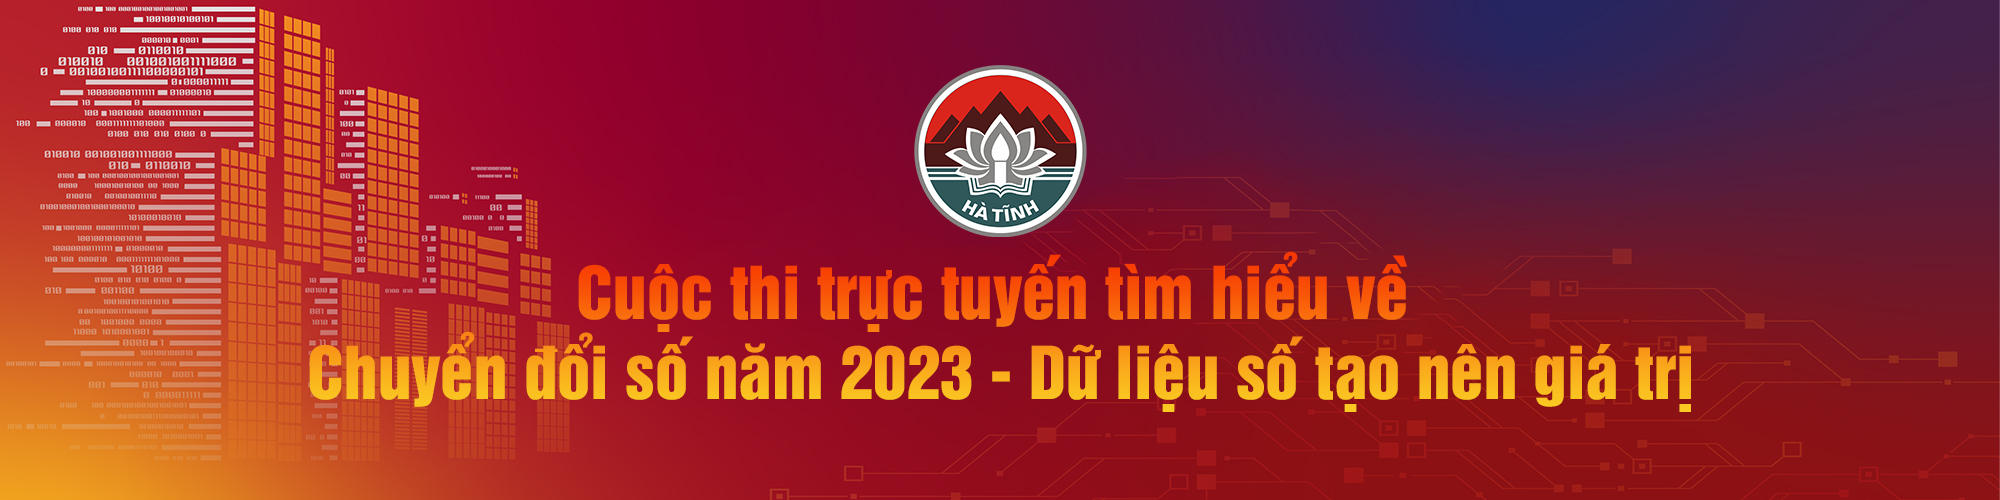 Kế hoạch Tổ chức Cuộc thi trực tuyến tìm hiểu về chuyển đổi số năm 2023